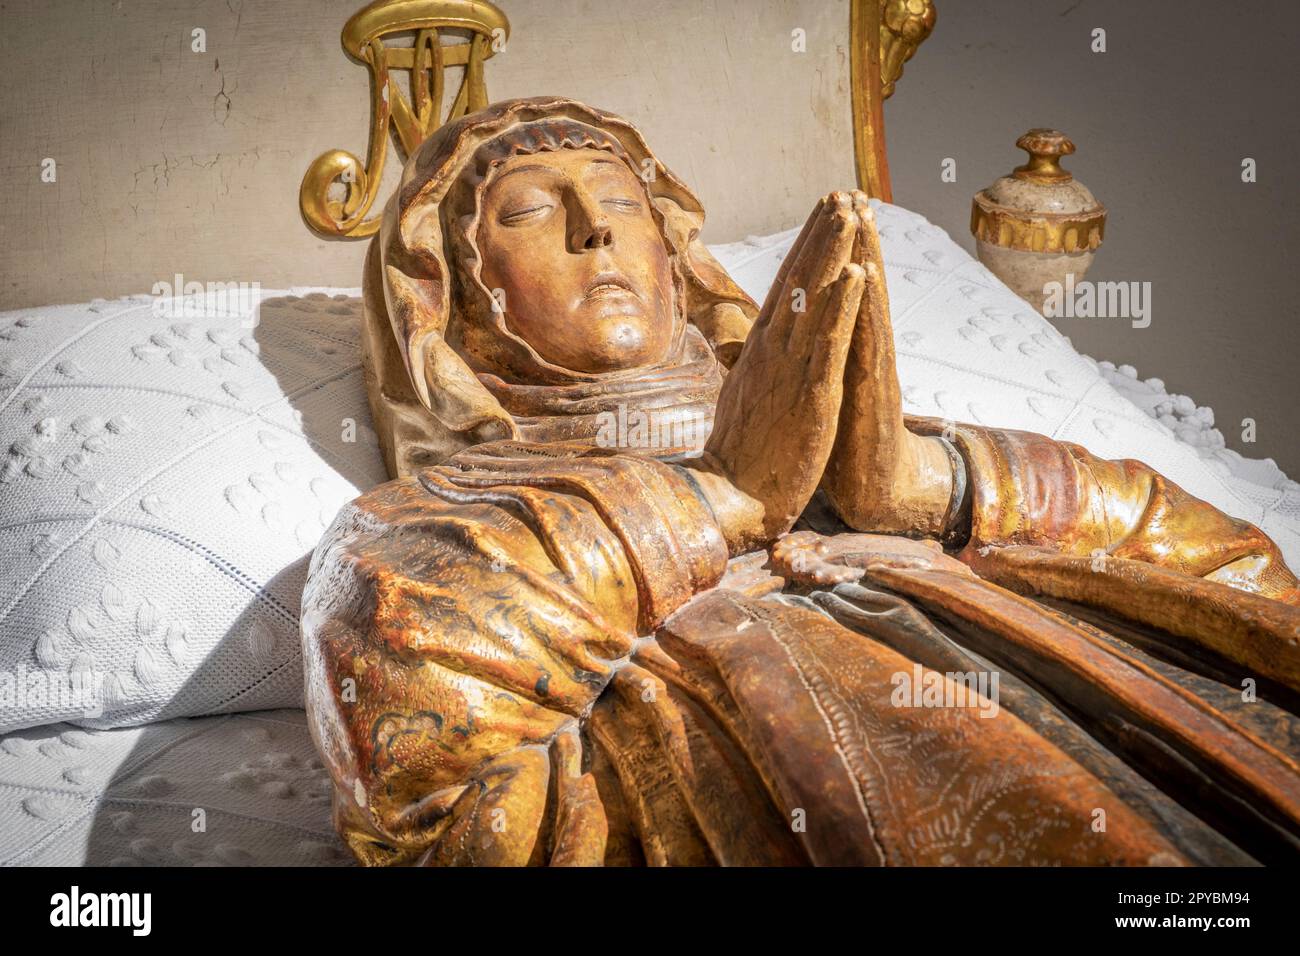 Mare de Deu morta, - dormizione della vergine -, scultura policroma del XVI secolo, opera di Gaspar Oms, chiesa di Santa Maria la Major, Inca, Foto Stock